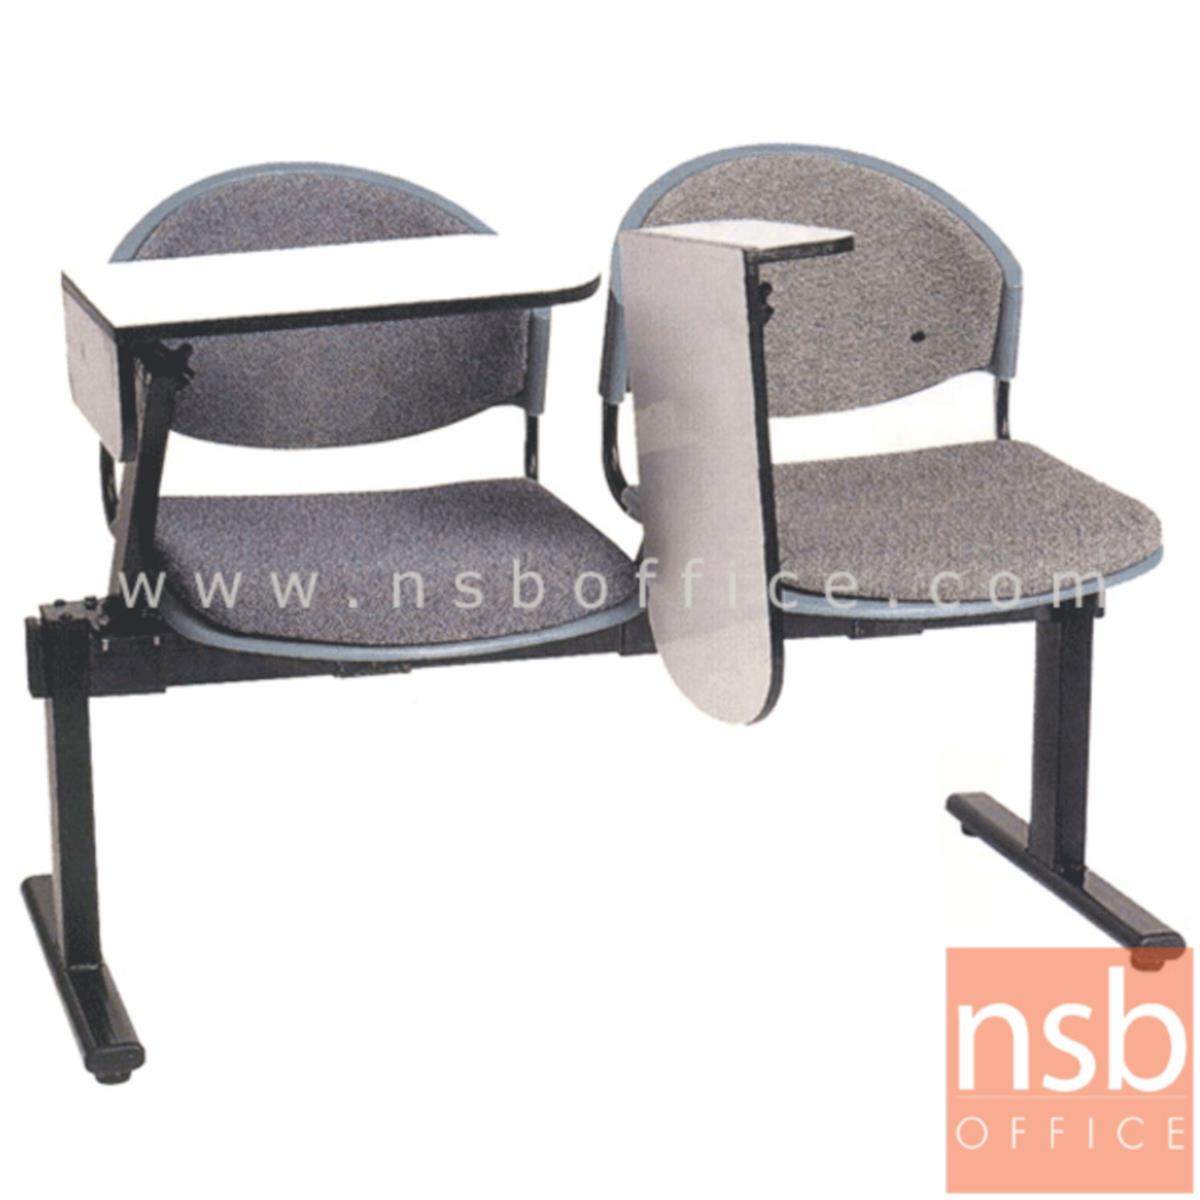 เก้าอี้เลคเชอร์แถวเฟรมโพลี่หุ้มเบาะ รุ่น D190 2 ,3 และ 4 ที่นั่ง ขาเหล็กเหลี่ยมพ่่นสี